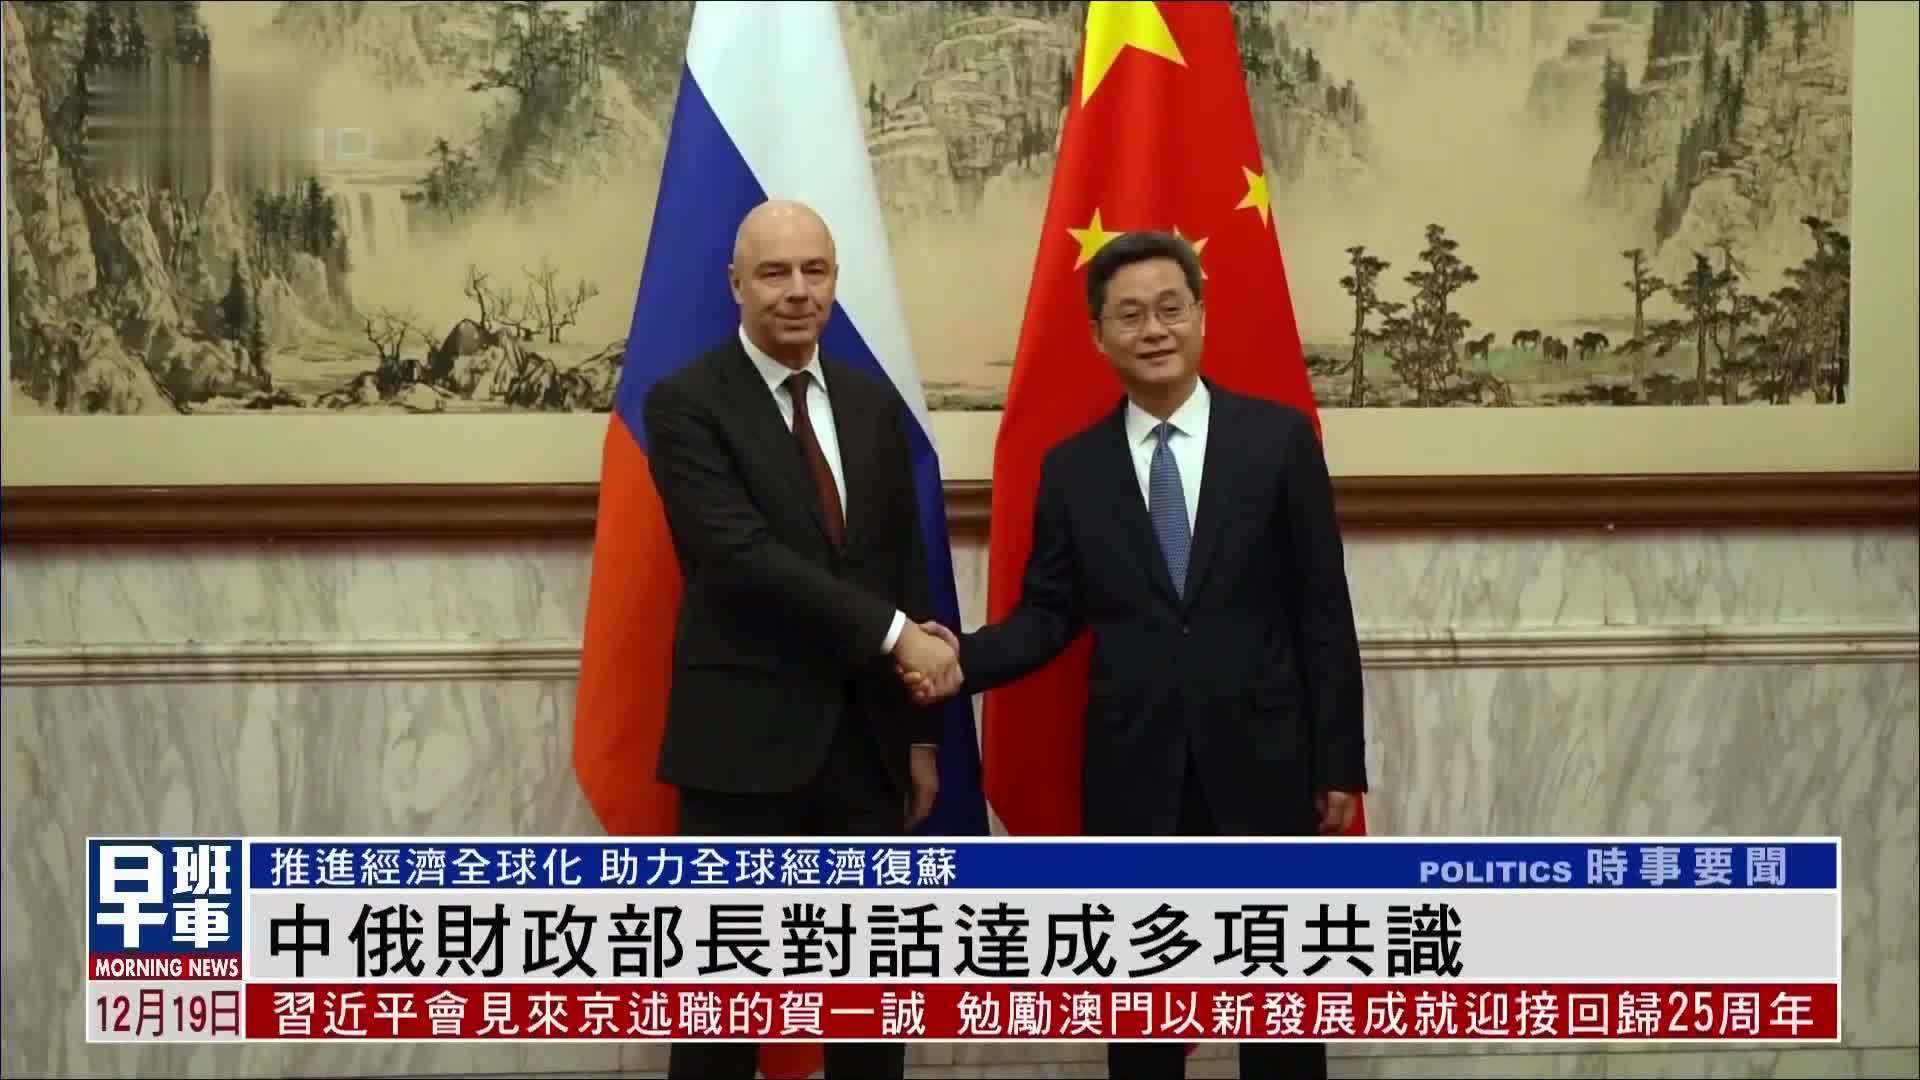 中俄运输合作分委会第二十一次会议在蓉召开 积极落实两国领导人重要共识 深入推进互联互通全方位合作 - 知乎